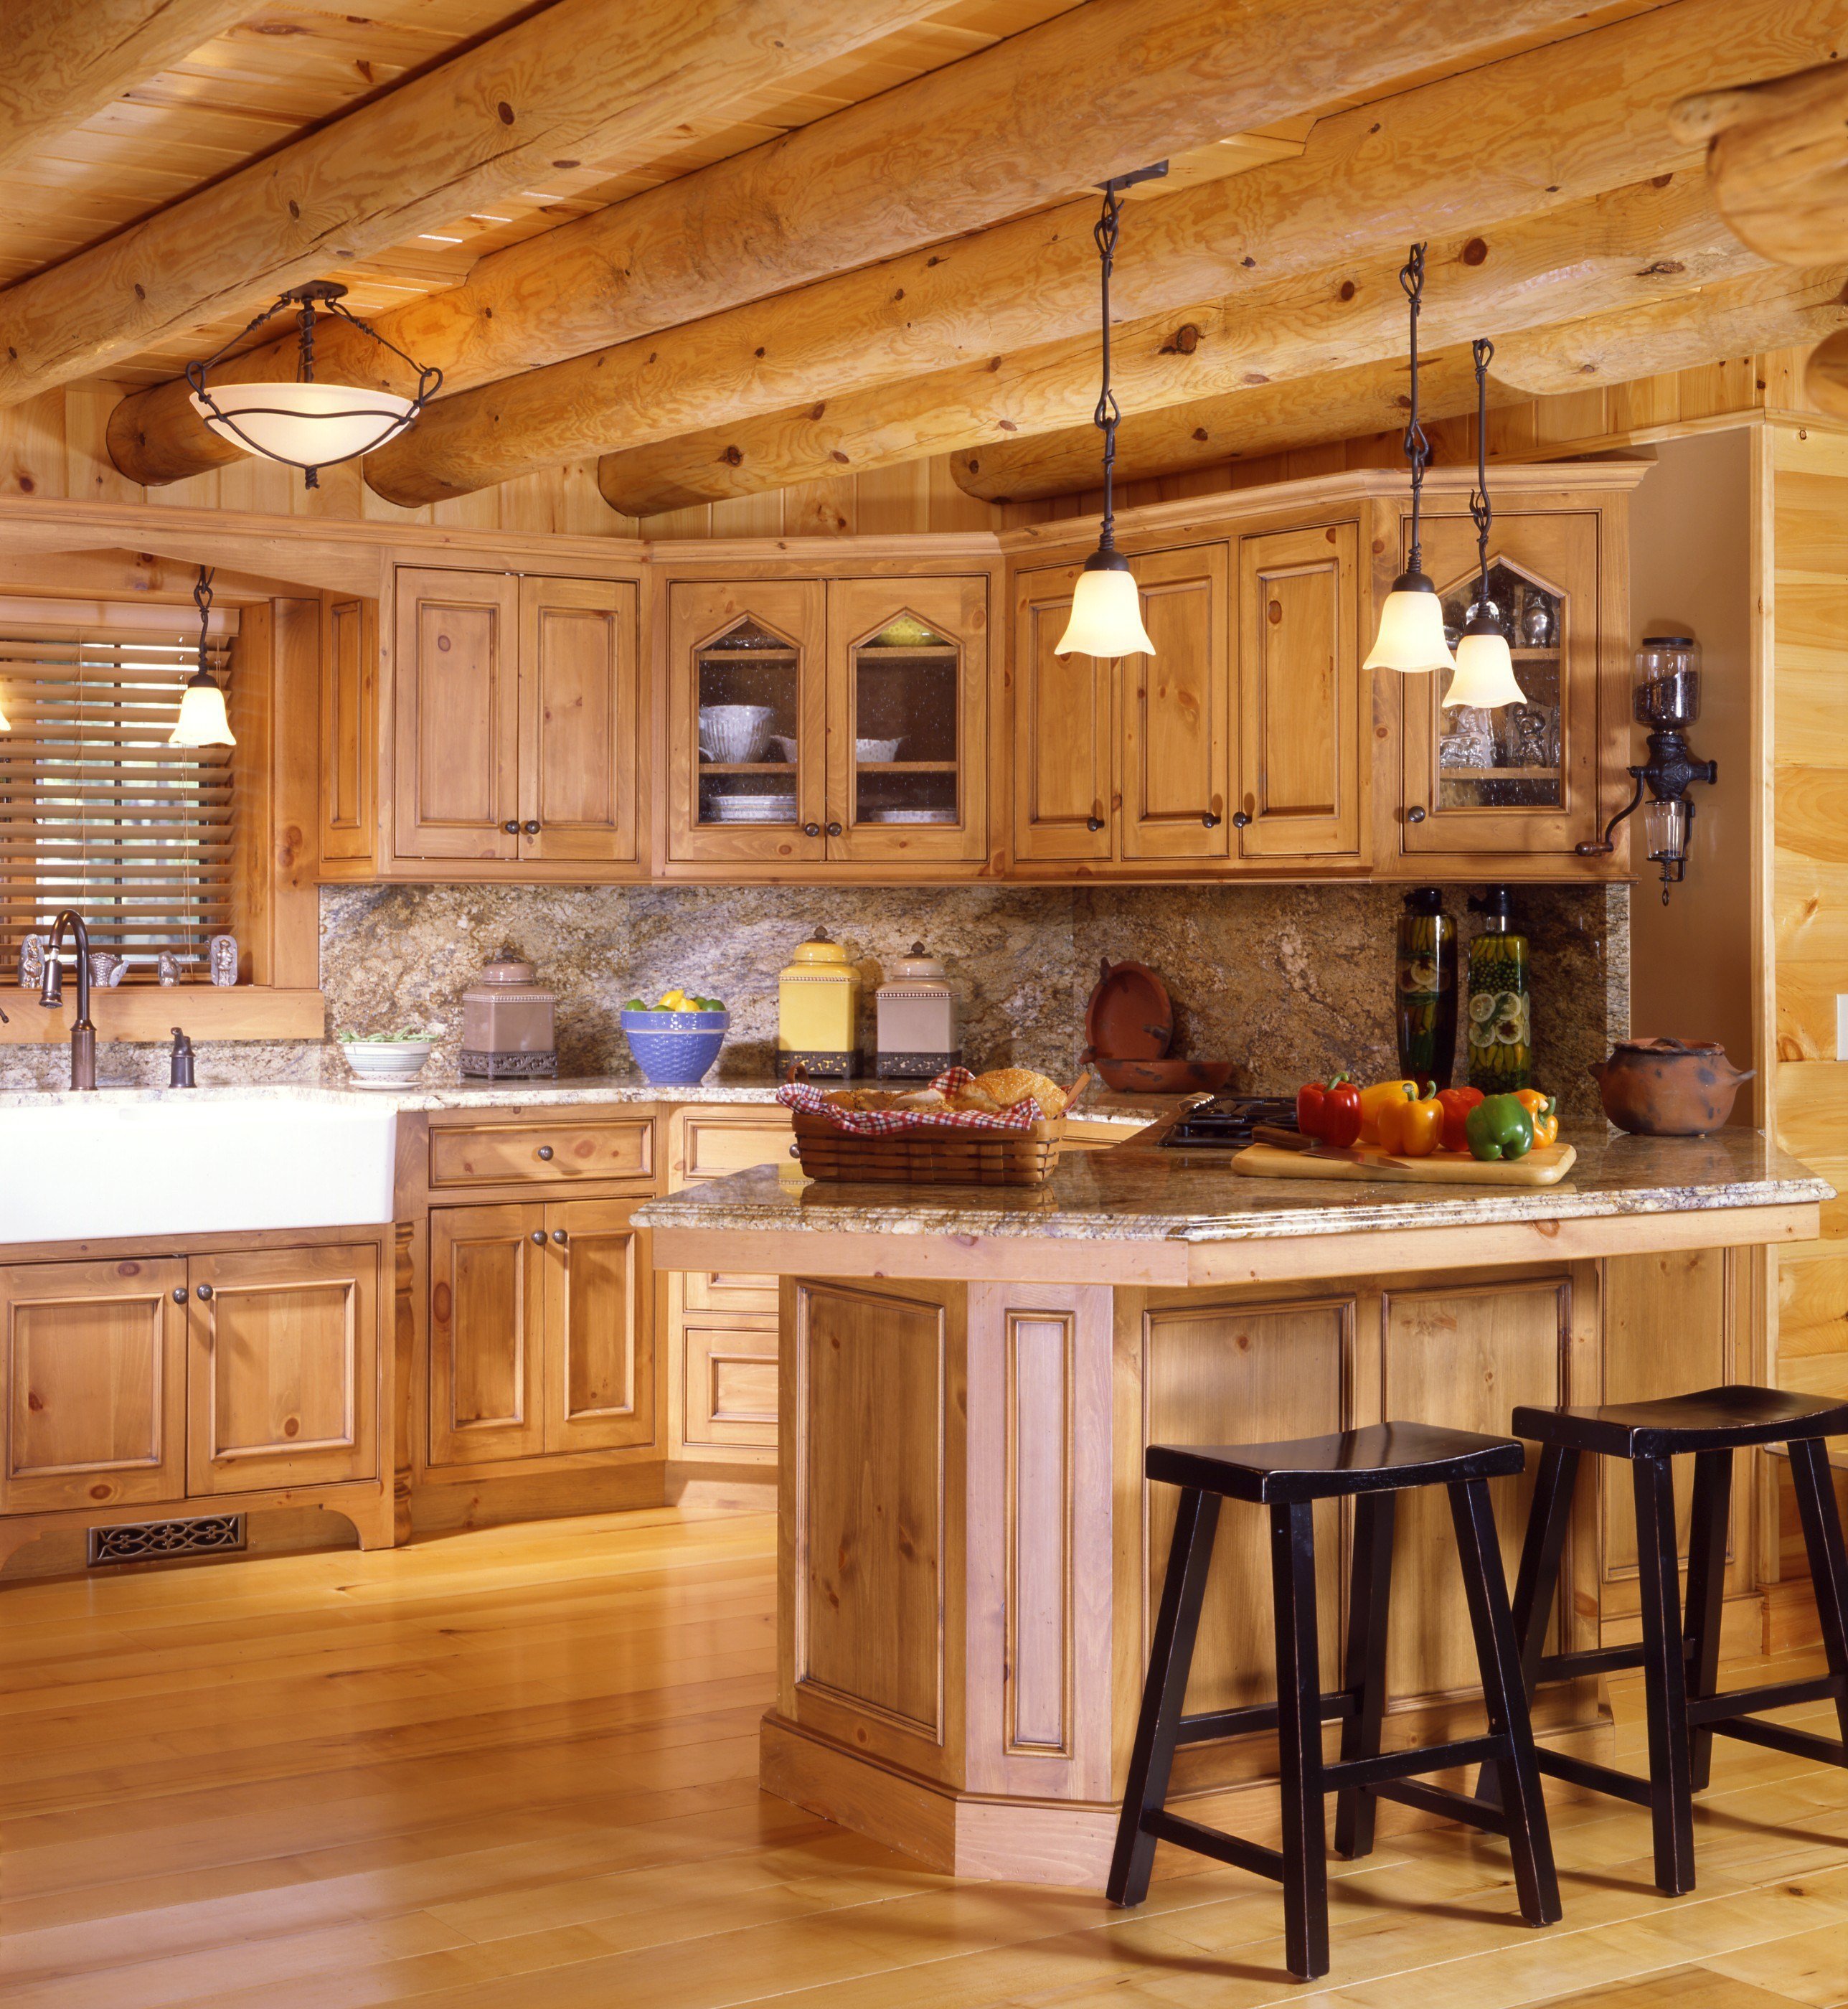 Кухни хорошие деревянные. Кухня в деревянном доме. Кухни в деревянноммдоме. Кухня в деревянном стиле. Красивая кухня в деревянном доме.